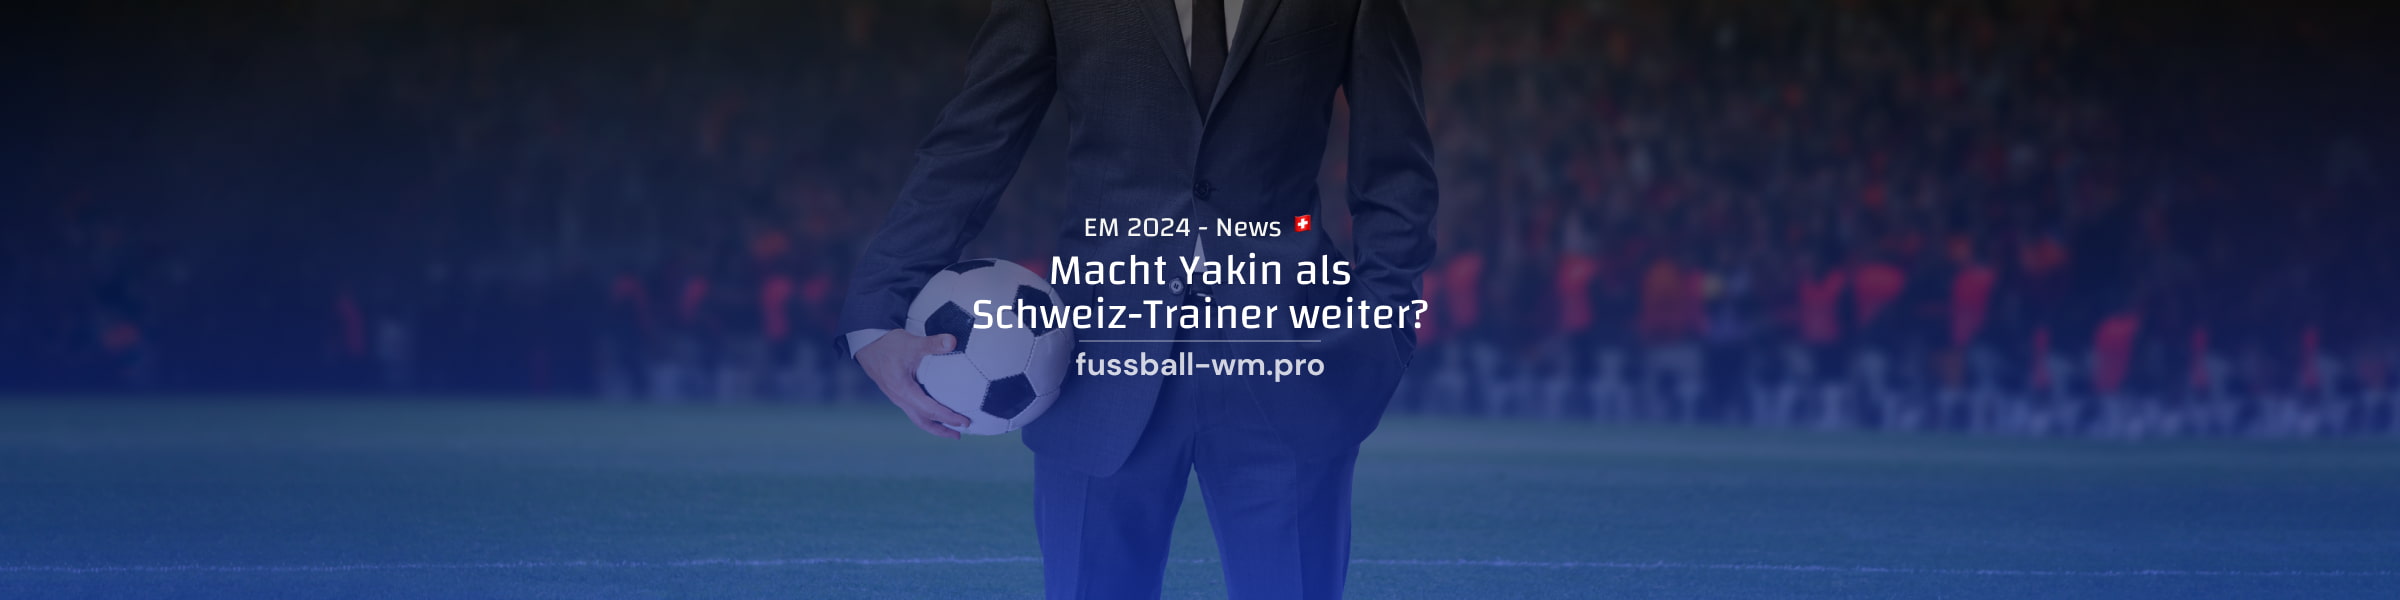 Bleibt Murat Yakin weiterhin Trainer der Schweiz?